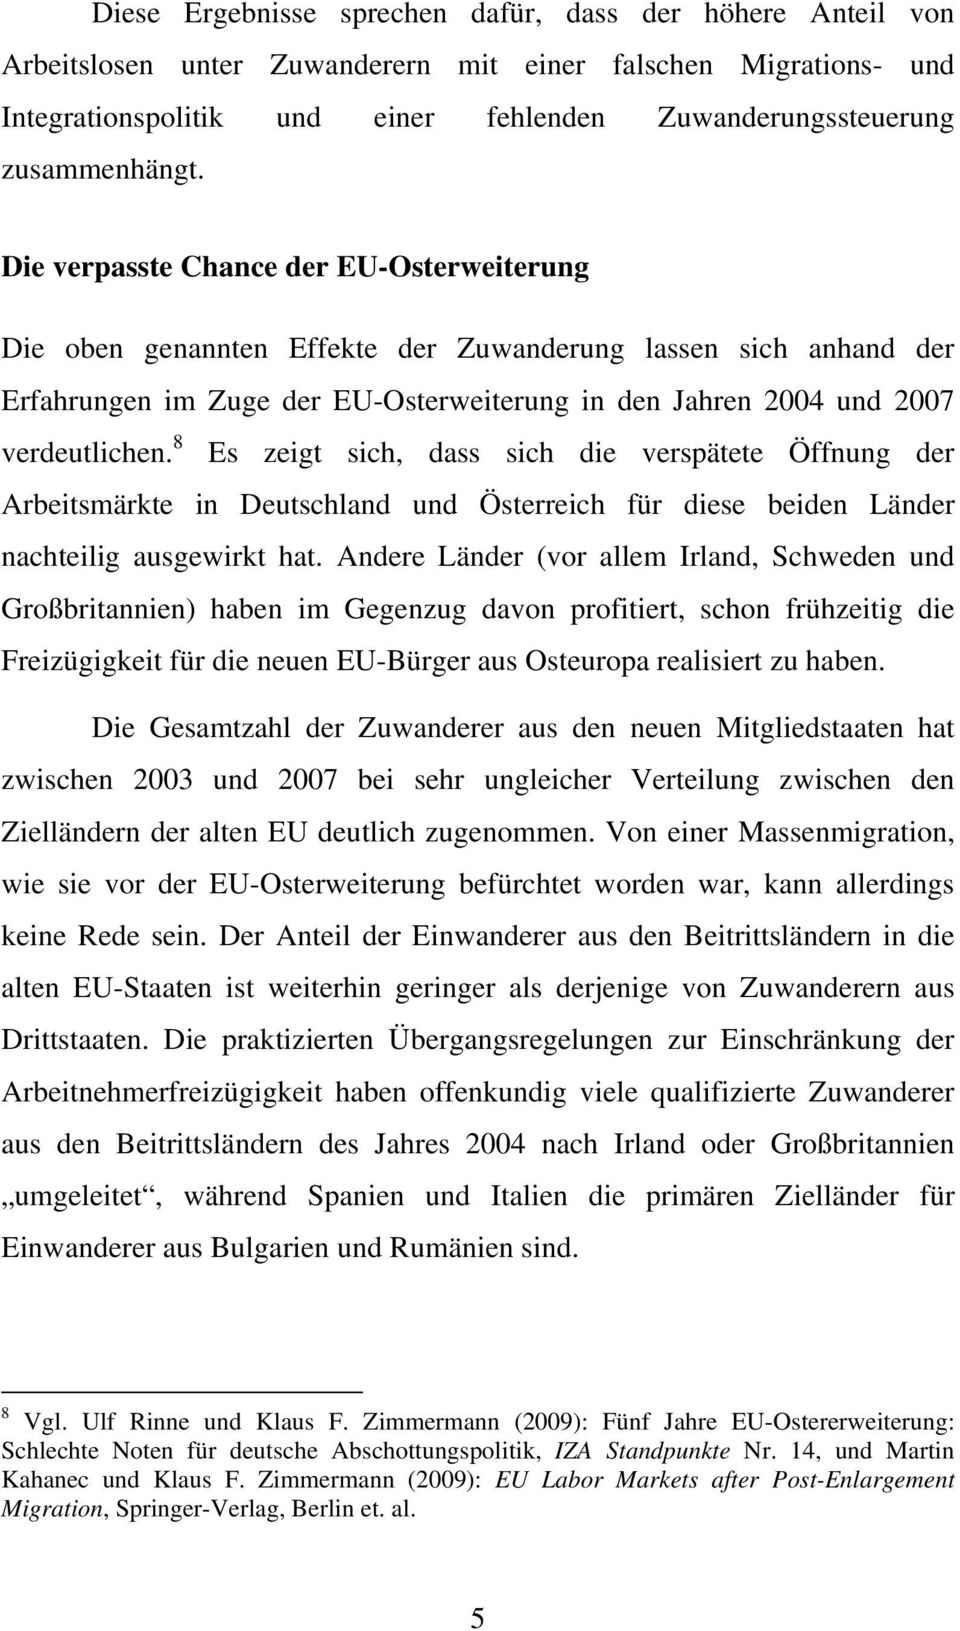 Die verpasste Chance der EU-Osterweiterung Die oben genannten Effekte der Zuwanderung lassen sich anhand der Erfahrungen im Zuge der EU-Osterweiterung in den Jahren 2004 und 2007 verdeutlichen.